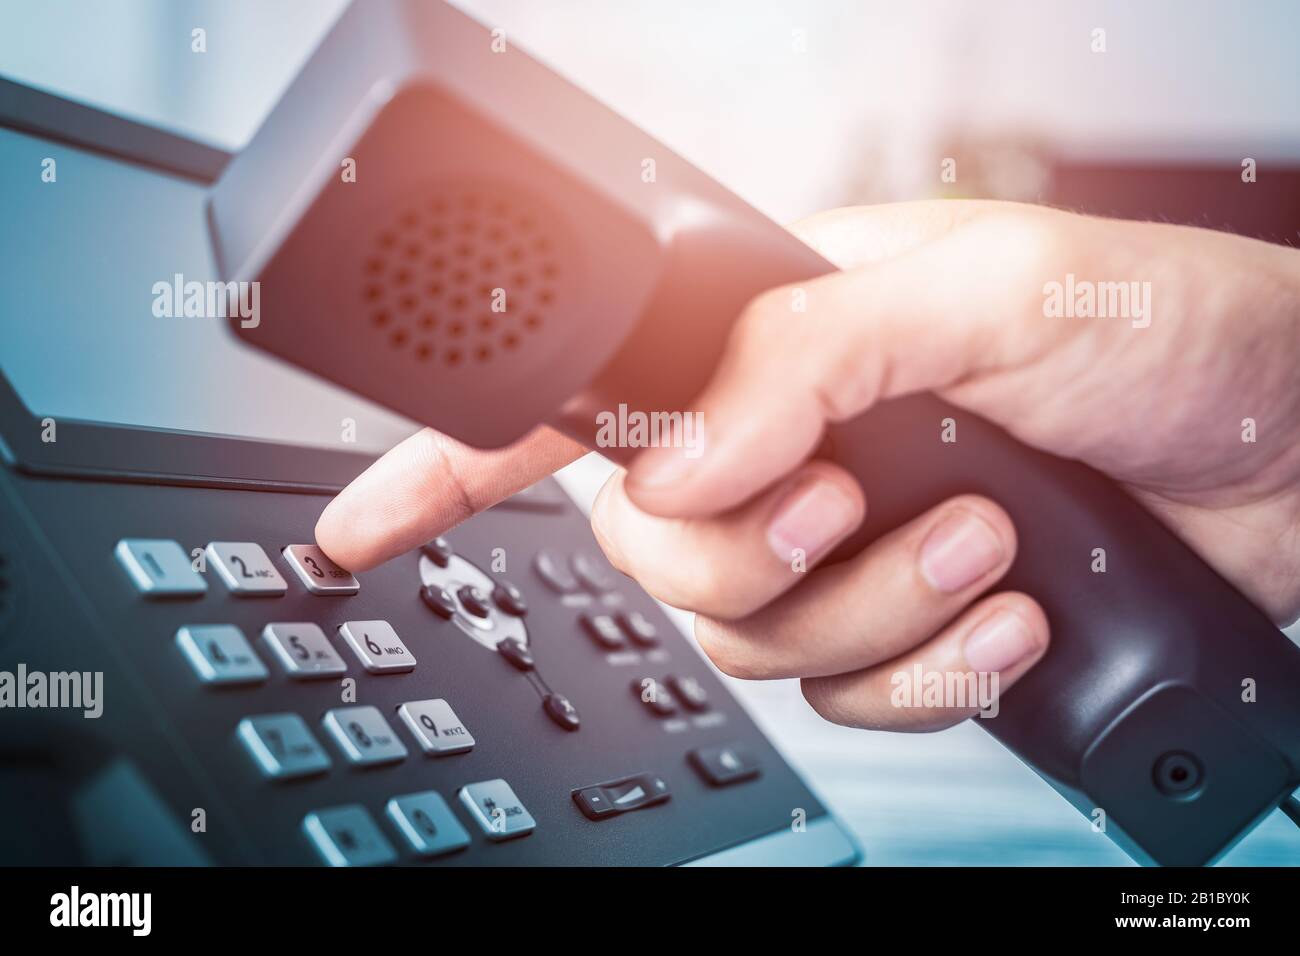 Kommunikations-Support, Call Center und Customer Service Helpdesk. Über eine Telefontastatur. Stockfoto